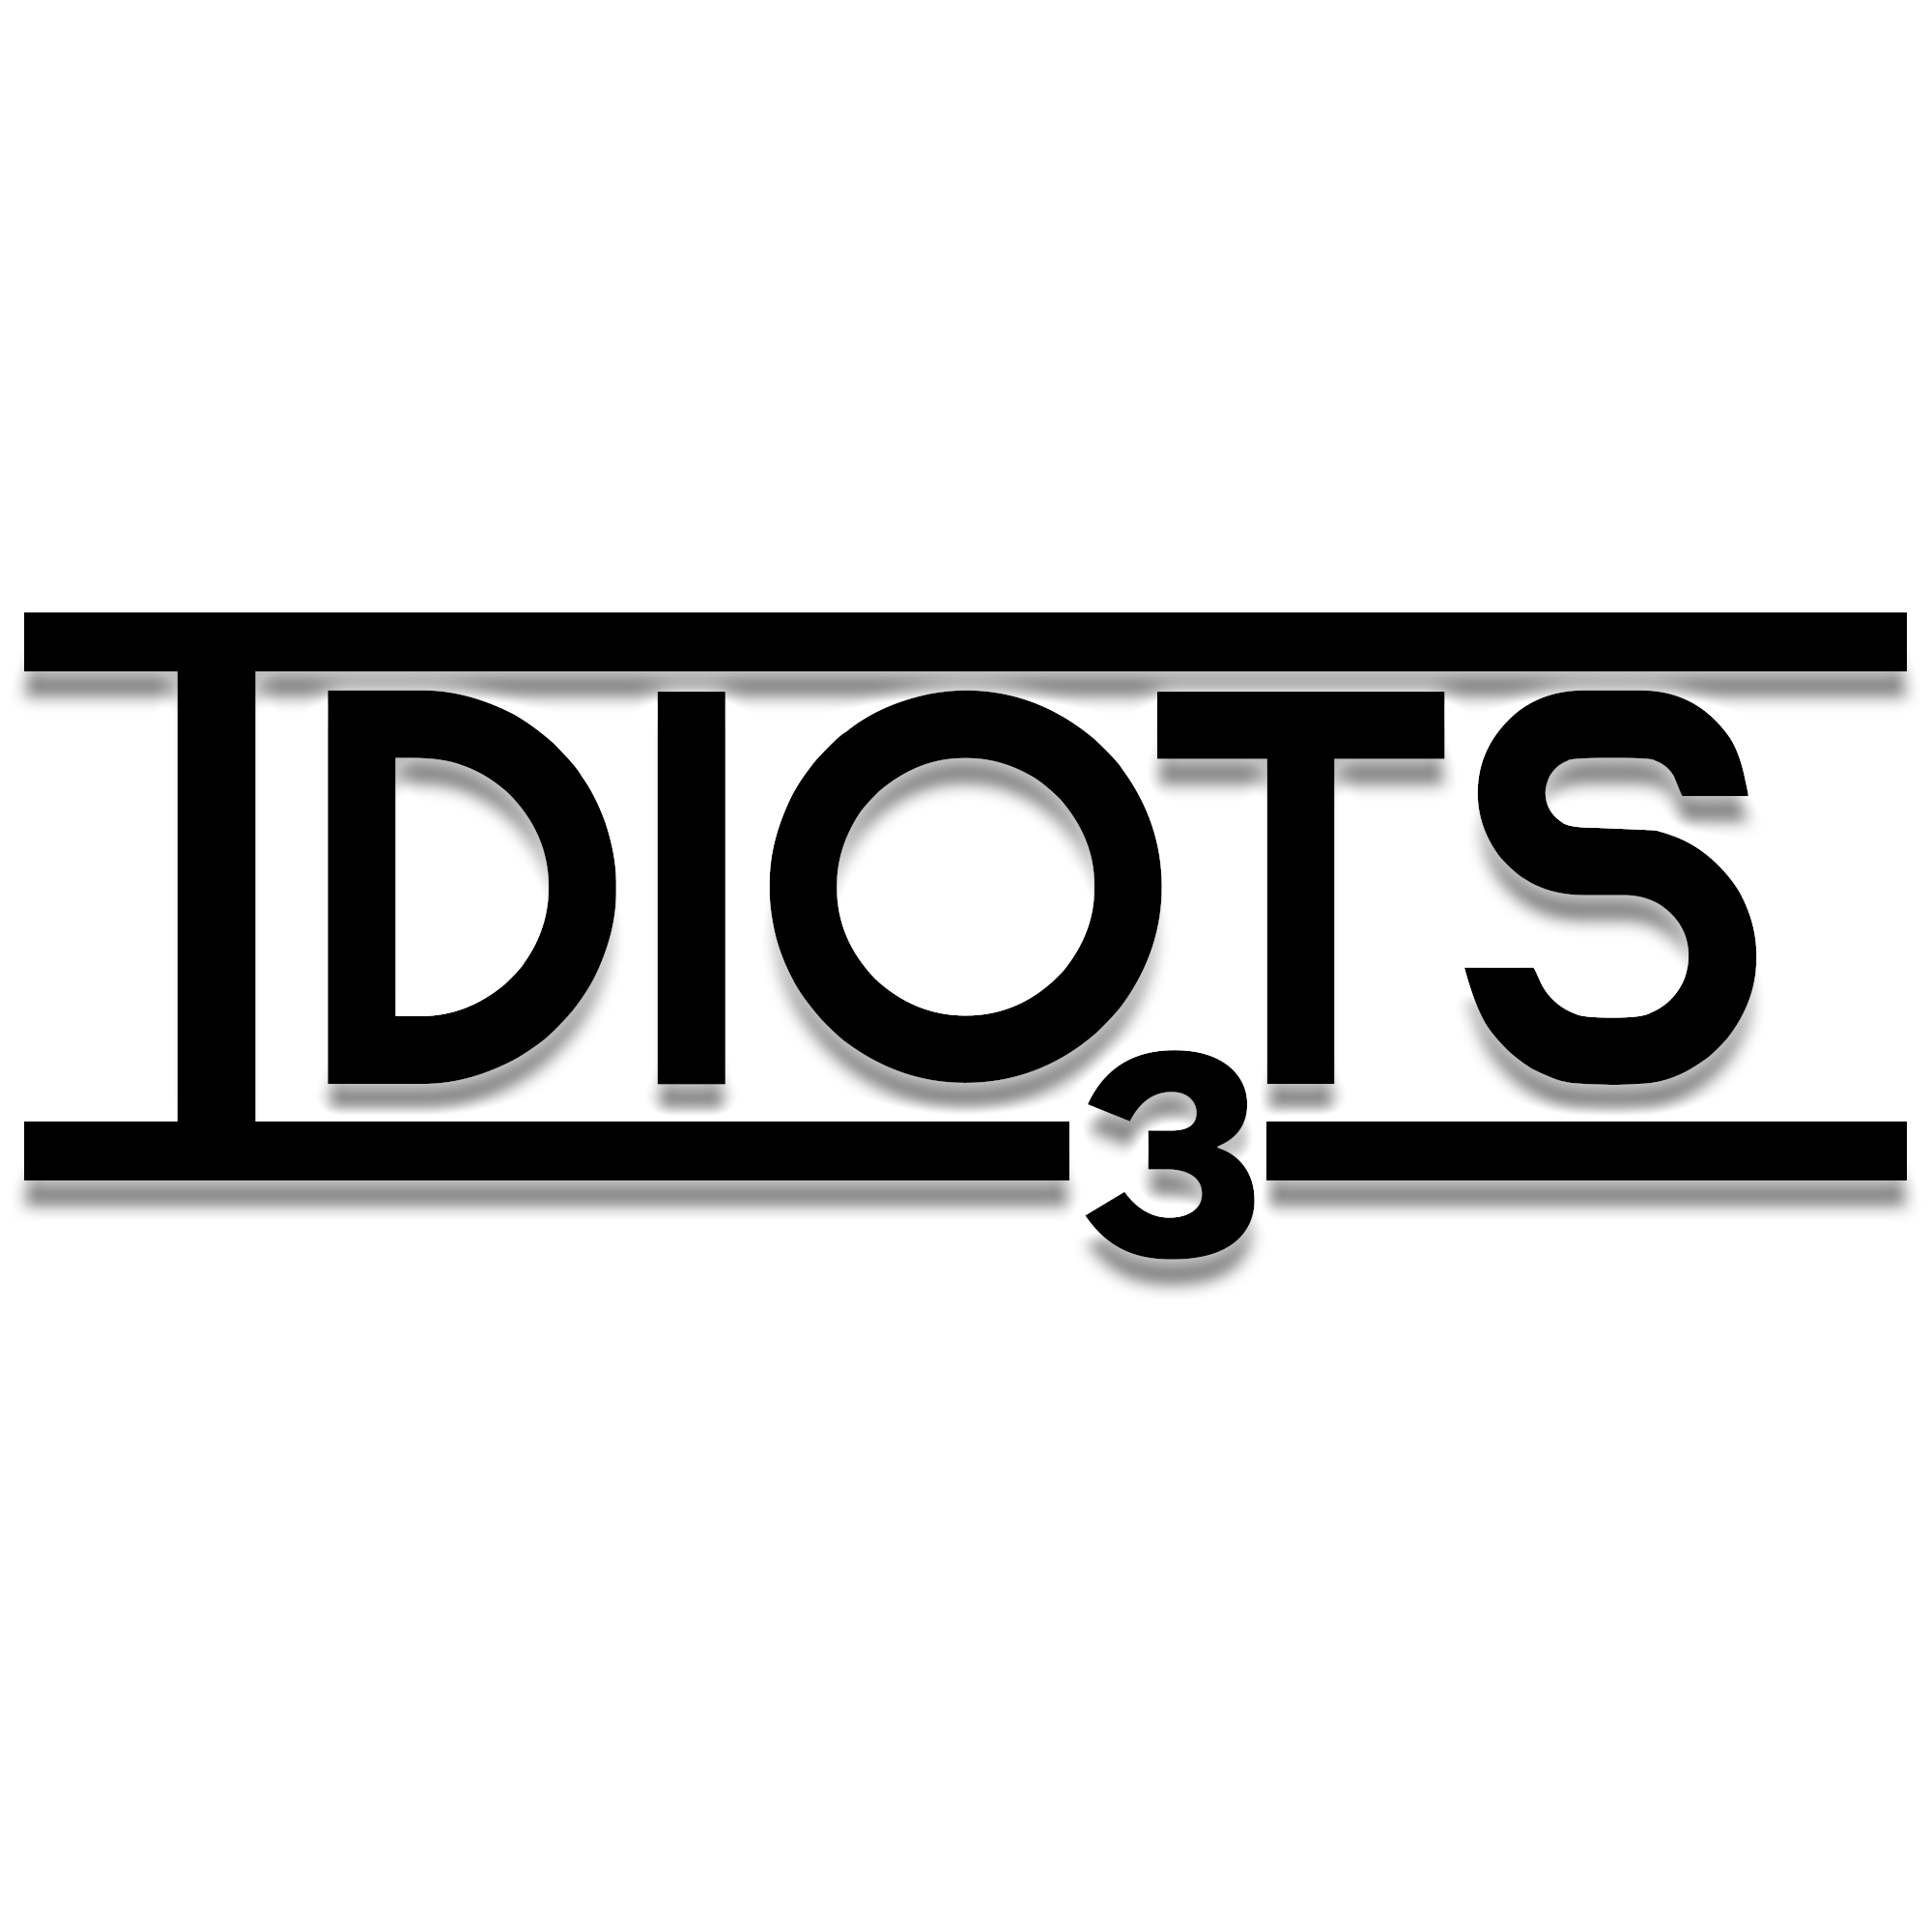 Idiots o' 3